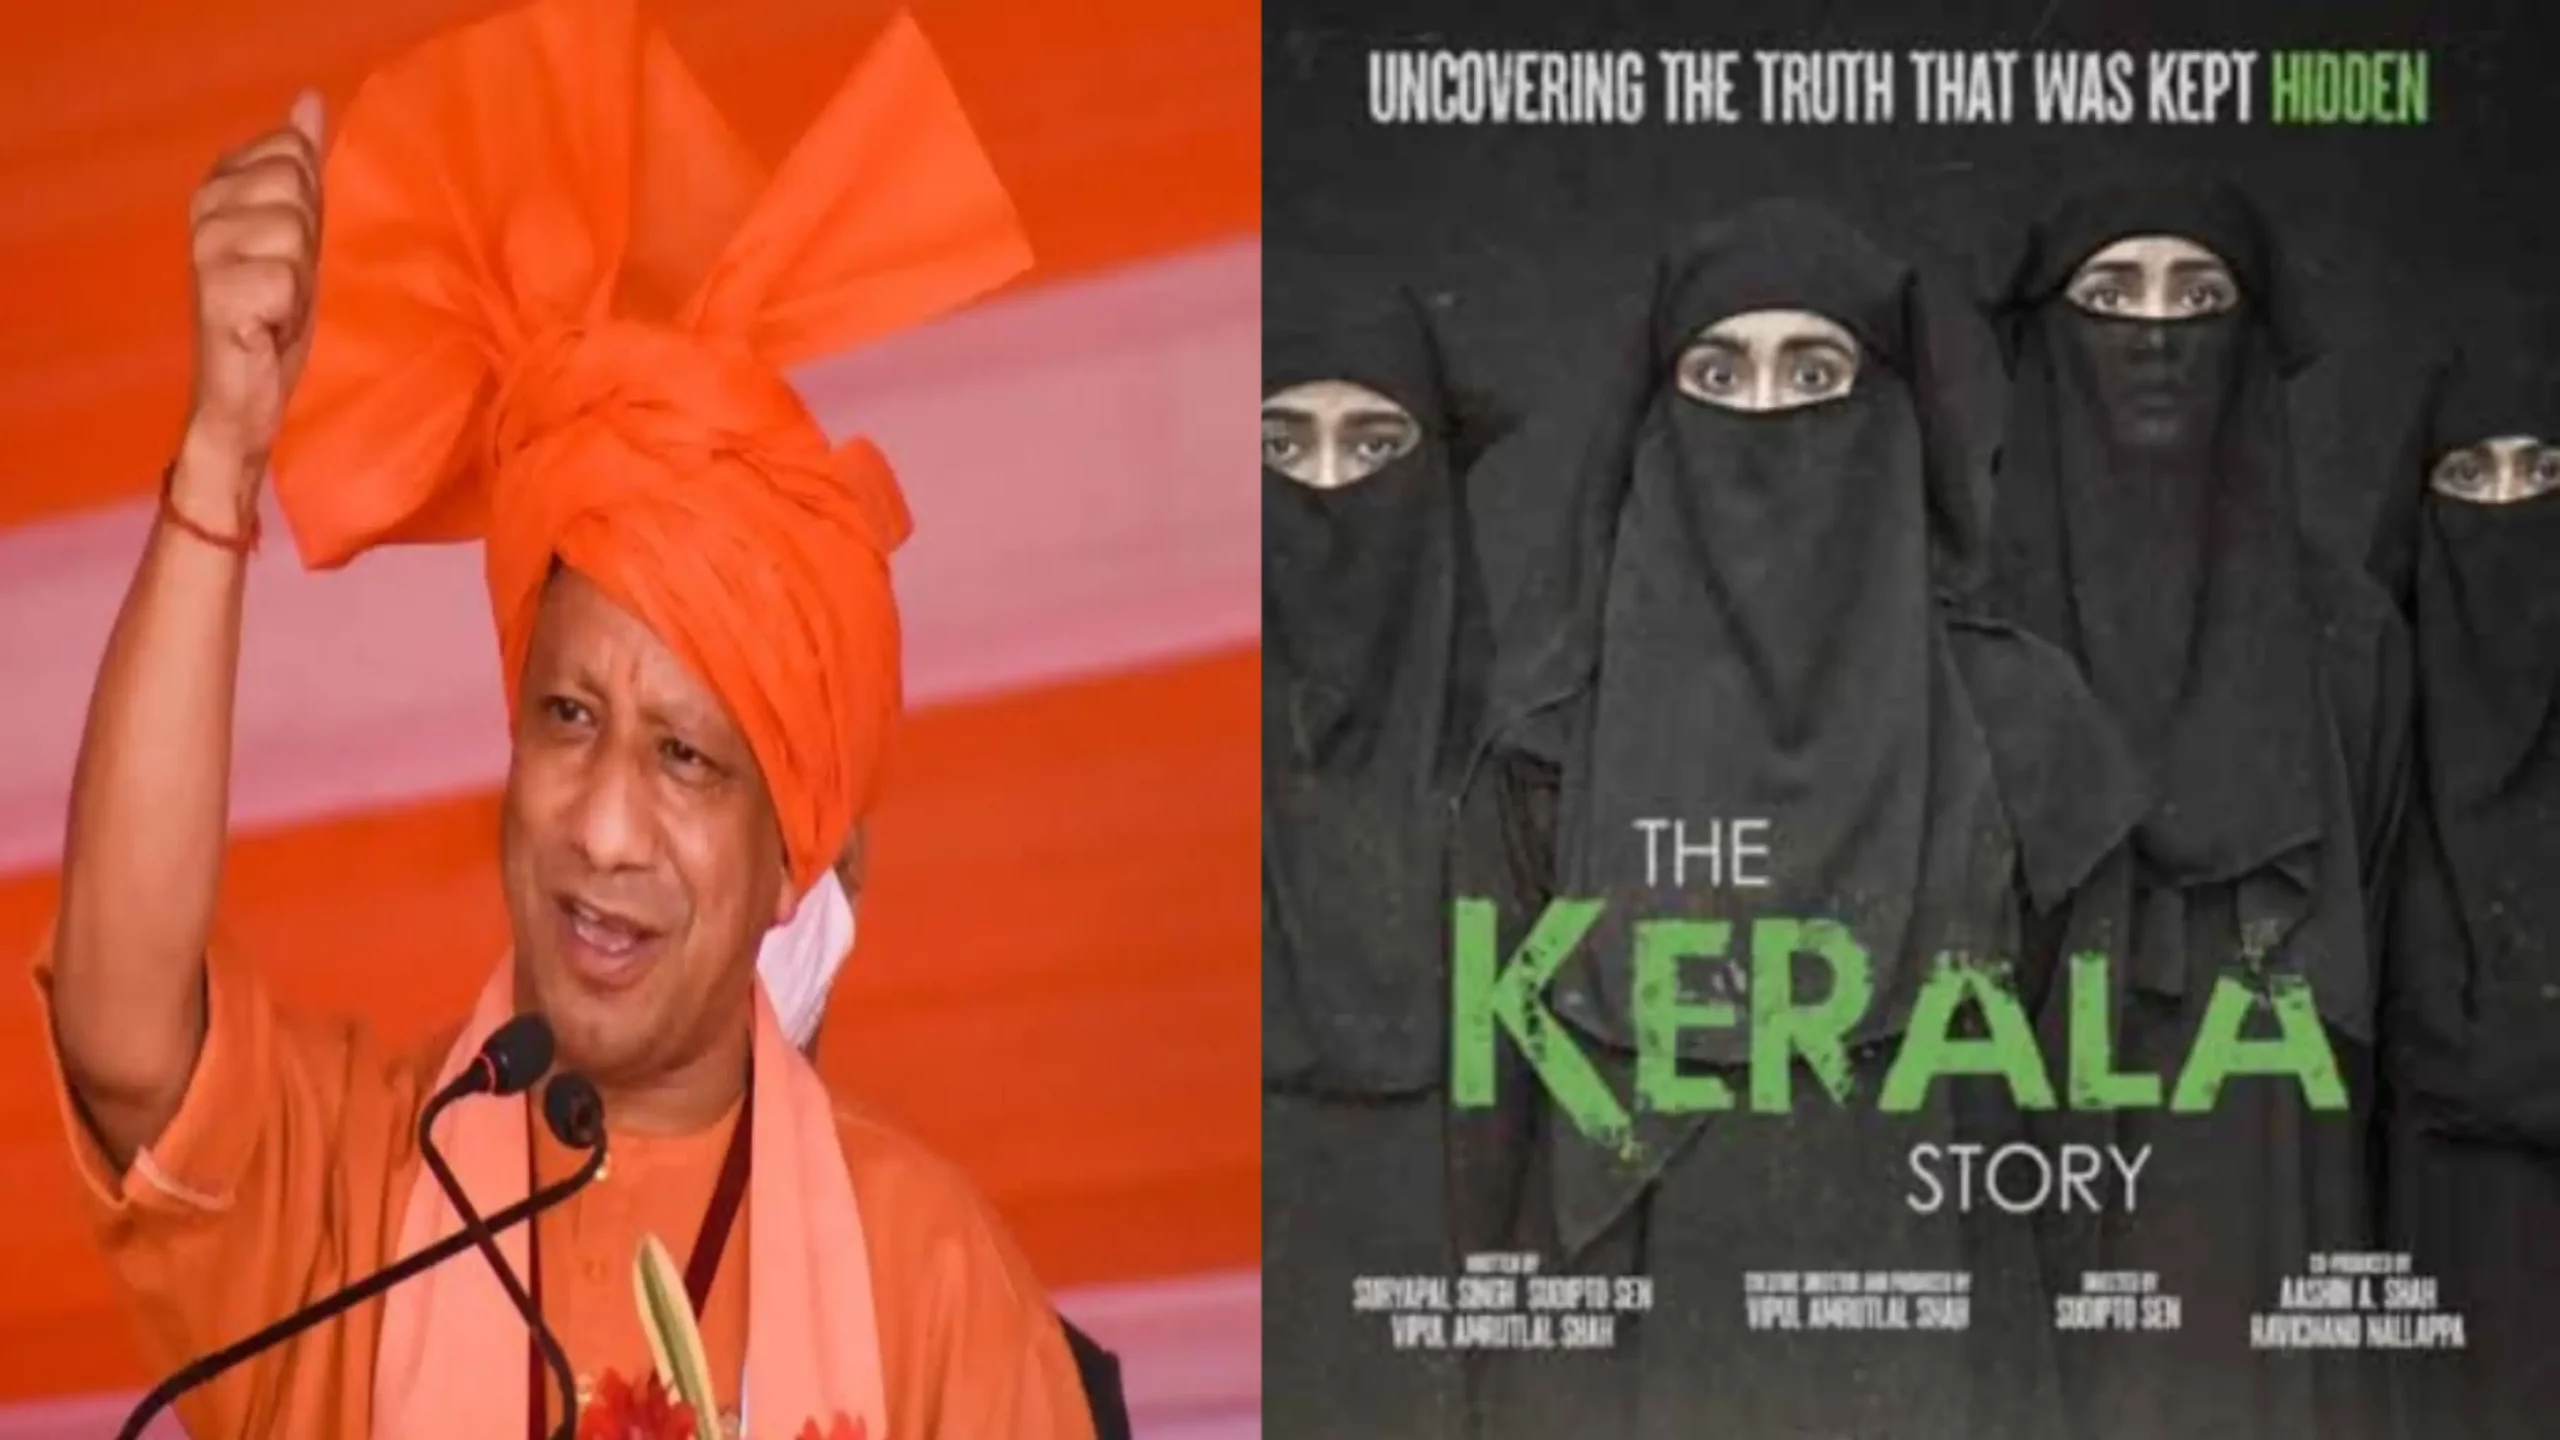 The Kerala Story : यूपी में टैक्स फ्री करने के बाद अपने कैबिनेट के साथ फिल्म देख सकते हैं सीएम योगी आदित्यनाथ 